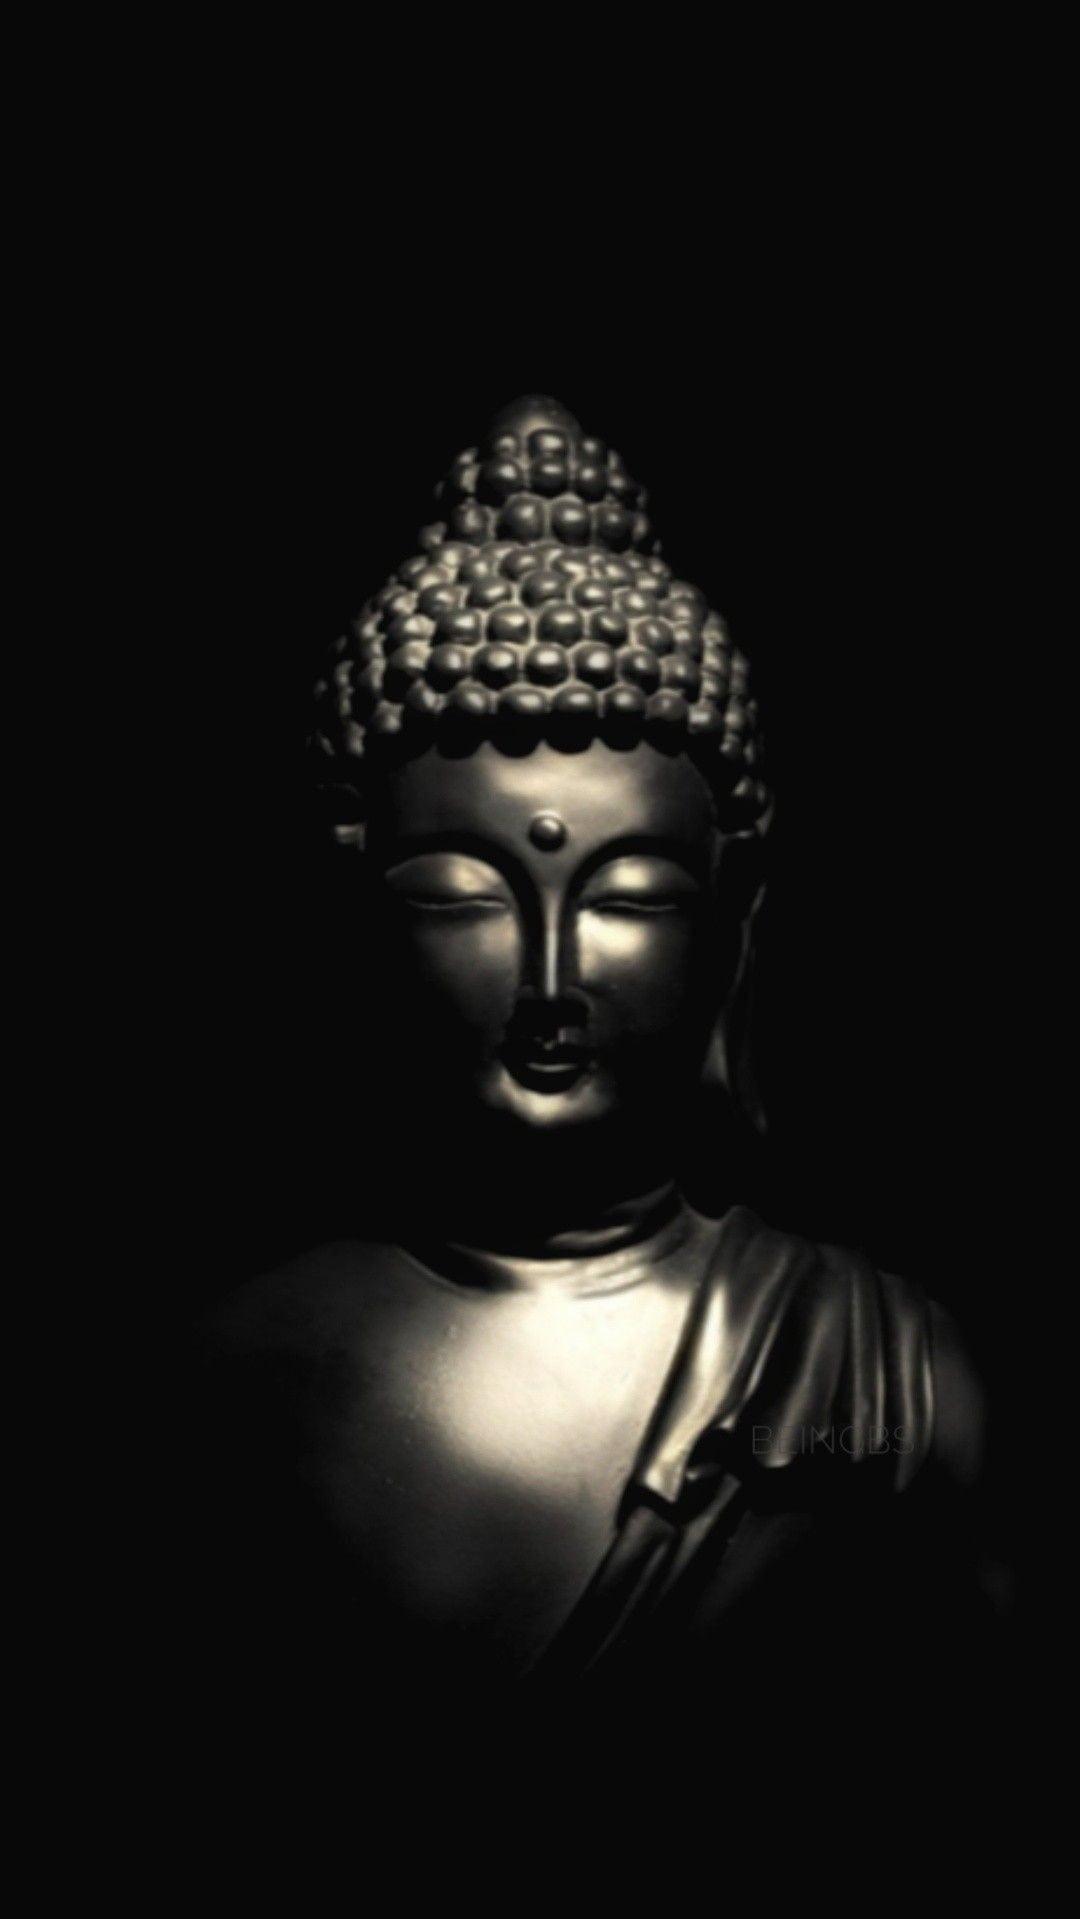 Hình nền Phật: Một hình nền Phật đẹp giúp bạn tạo ra không gian yên tĩnh, trang nhã trên điện thoại hoặc máy tính của mình. Nó mang đến sự bình an và lấy đi mọi căng thẳng trong cuộc sống. Hãy tìm phiên bản yêu thích của bạn và hưởng thụ cảm giác thư giãn mỗi lần mở màn hình.